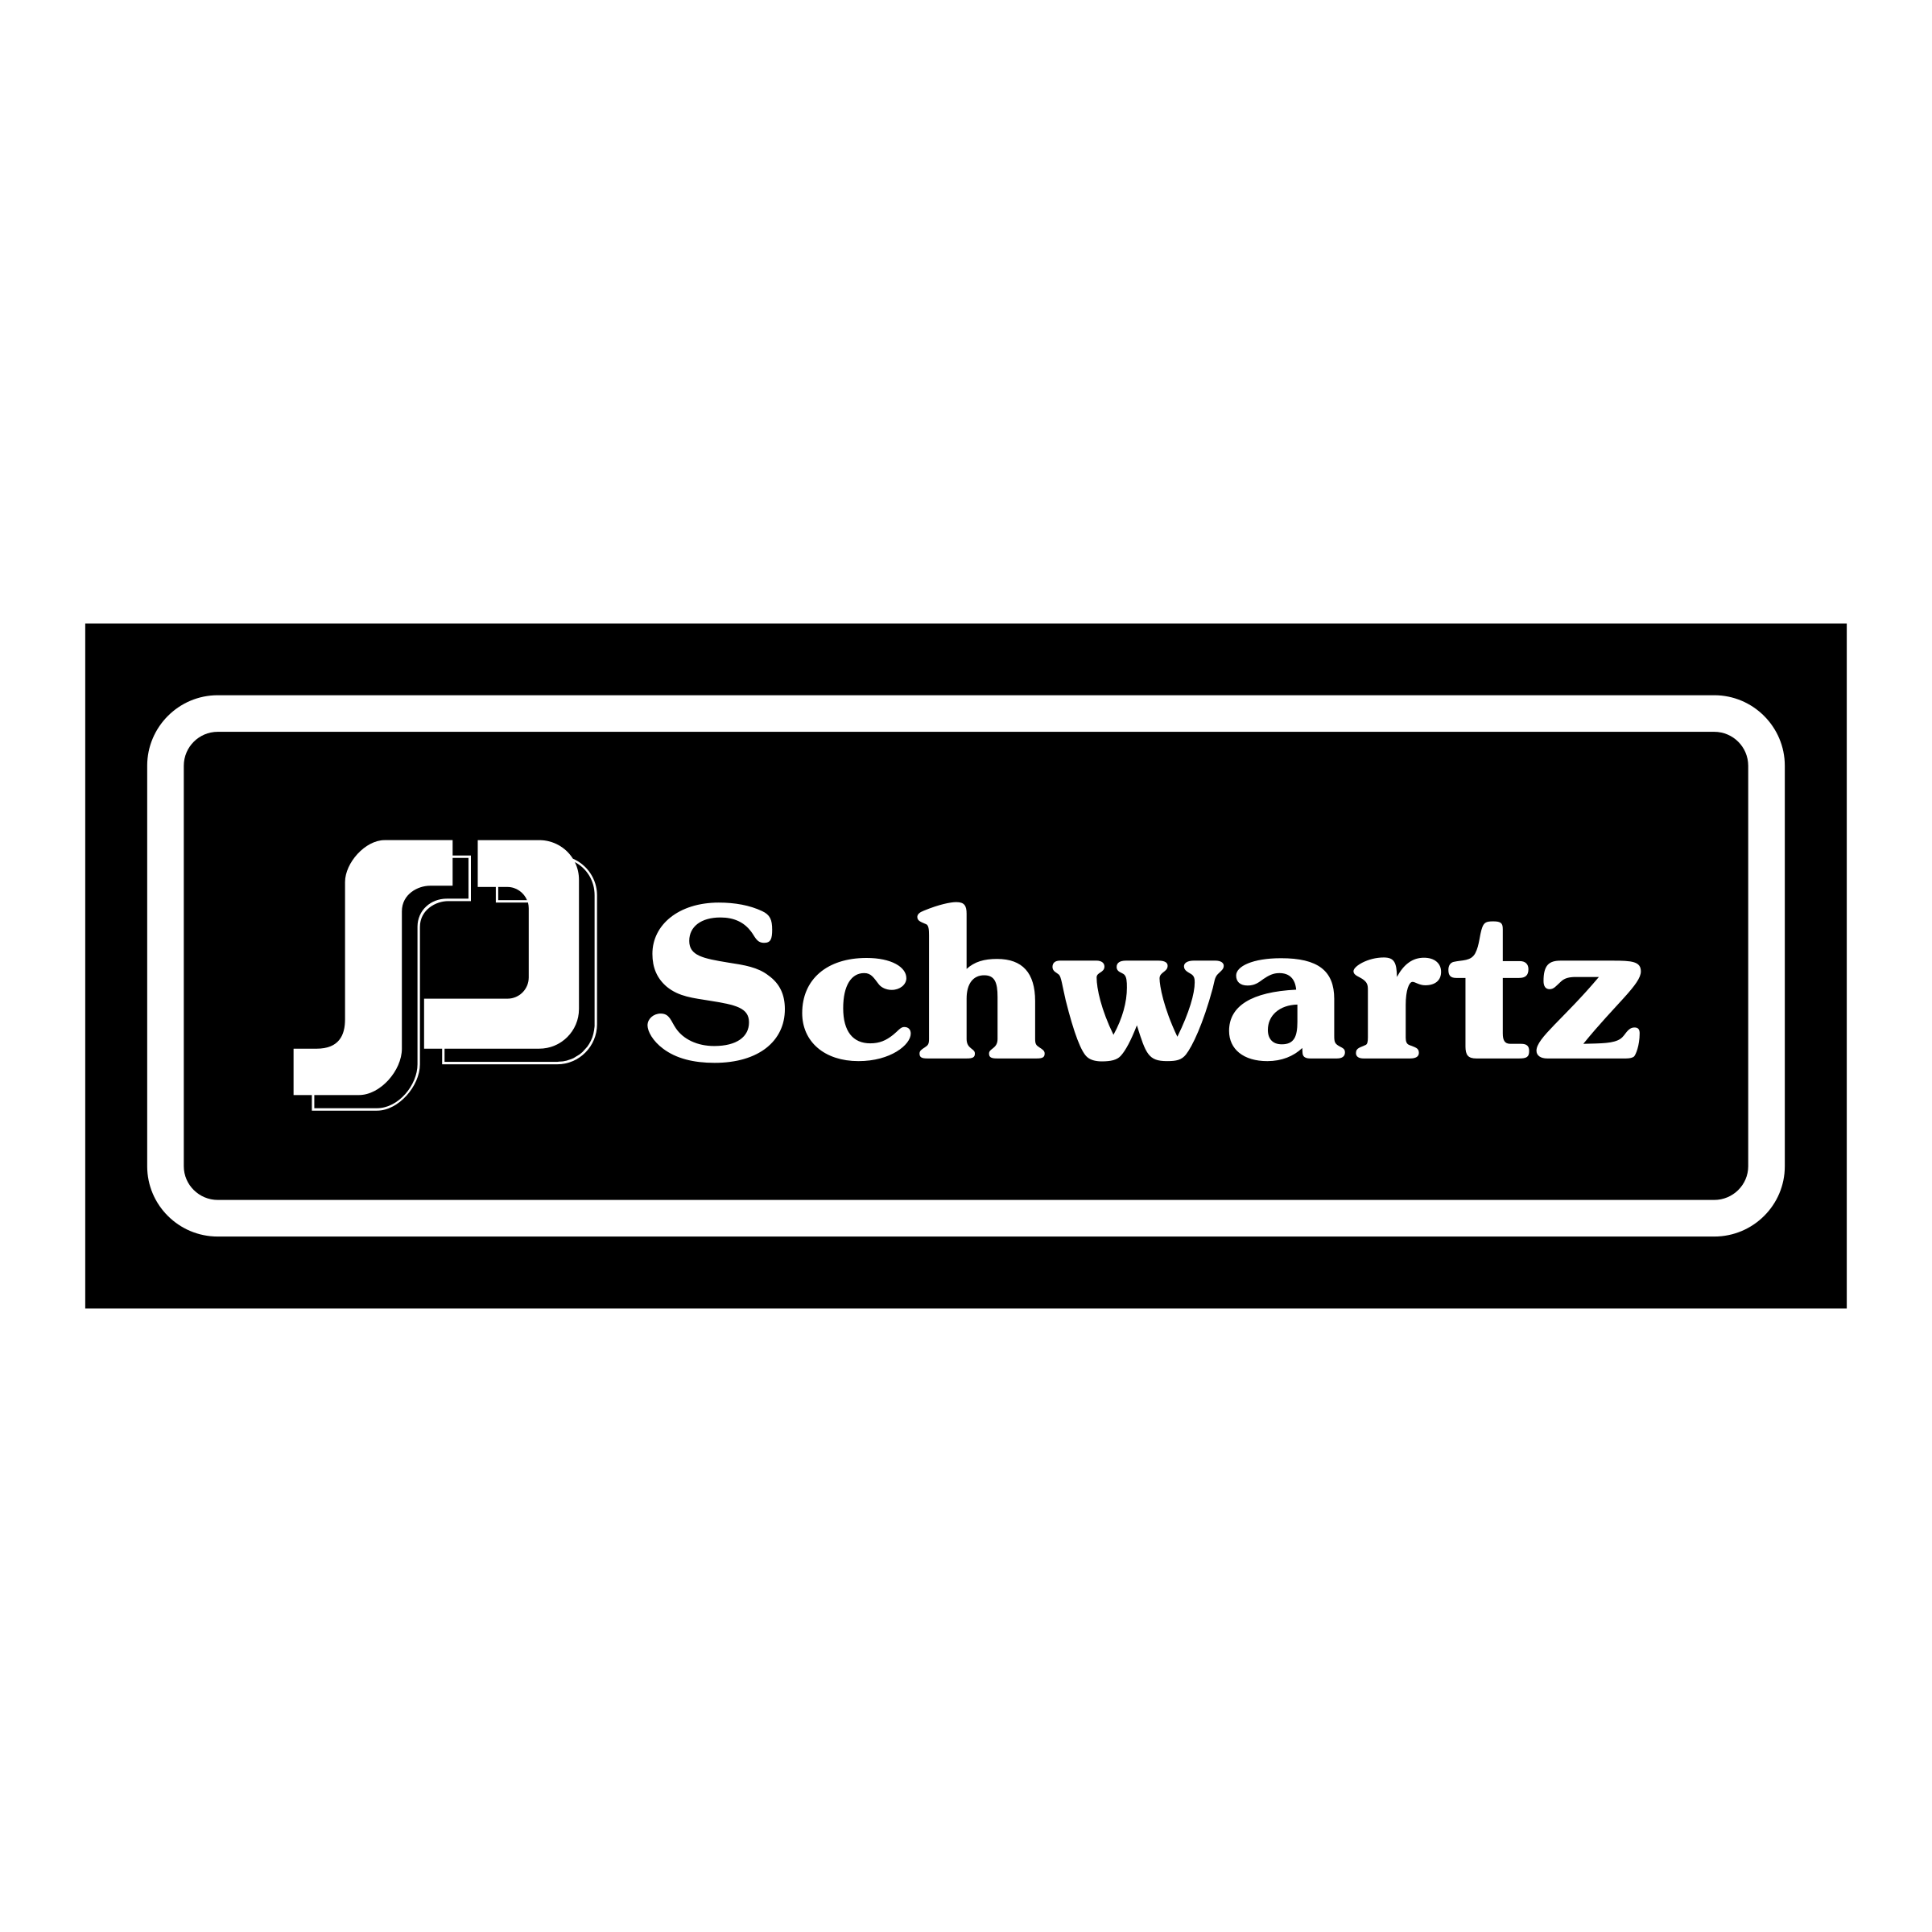 Schwartz Logo - Schwartz Logo PNG Transparent & SVG Vector - Freebie Supply